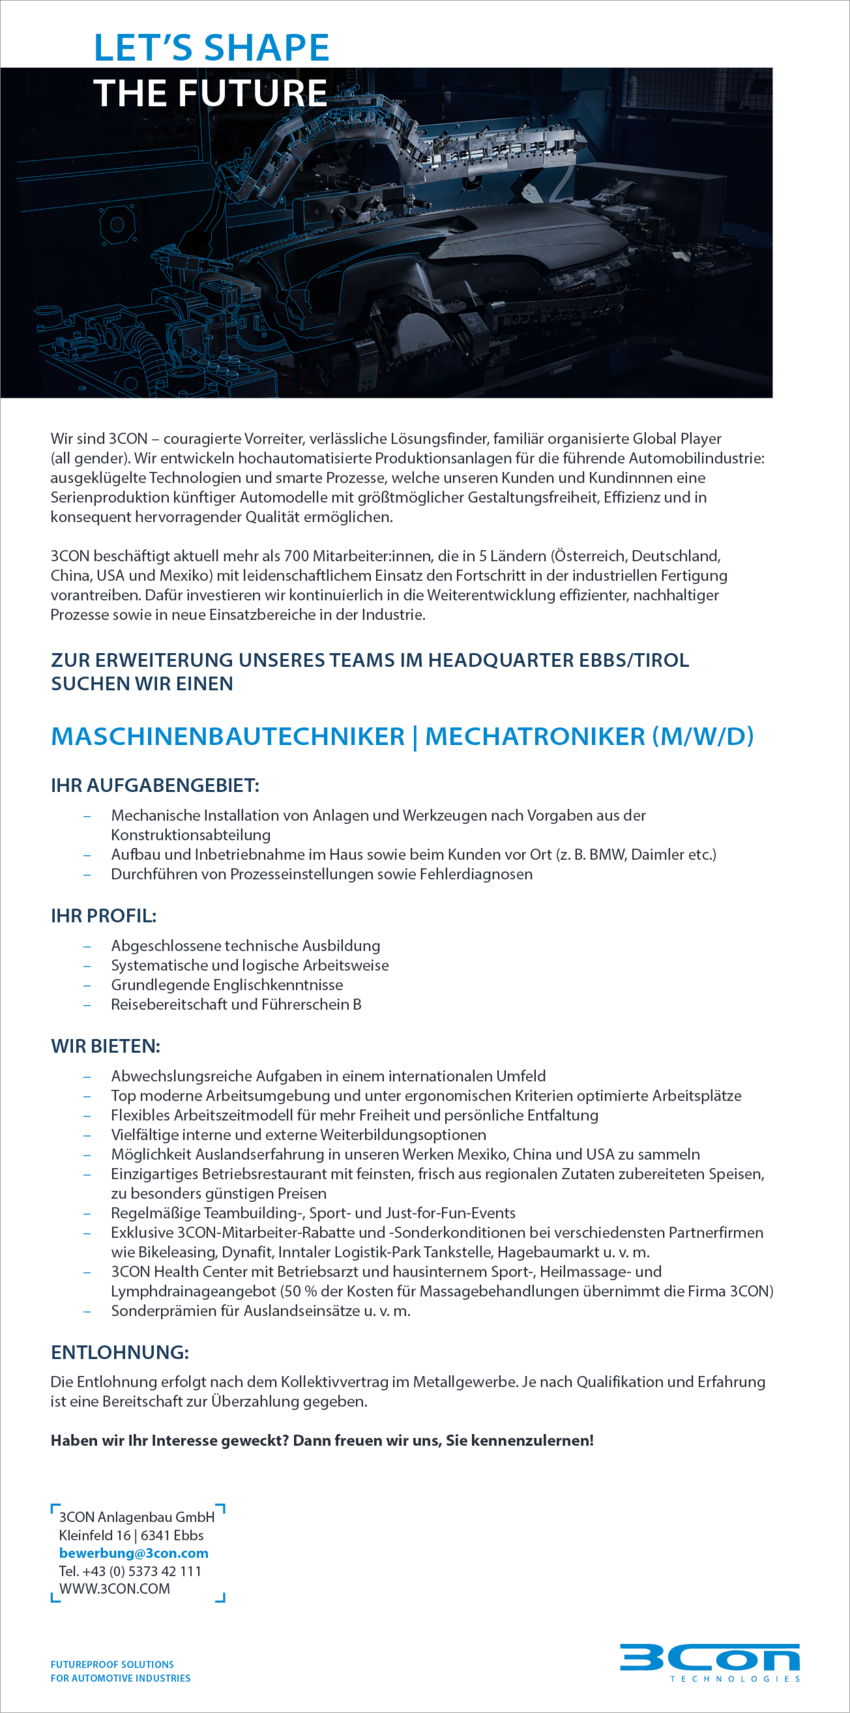 Maschinenbautechniker / Mechatroniker (m/w/d)